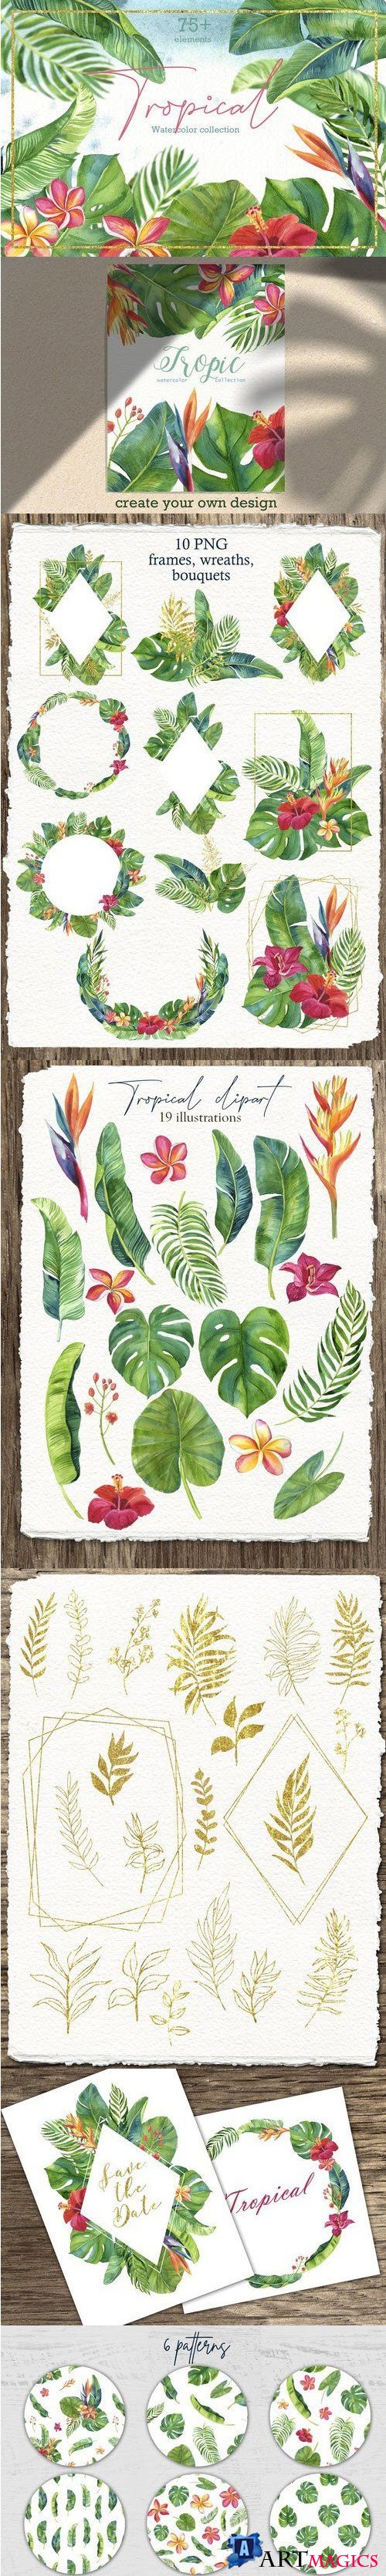 Tropic leaves & flowers Watercolor set - 3886181